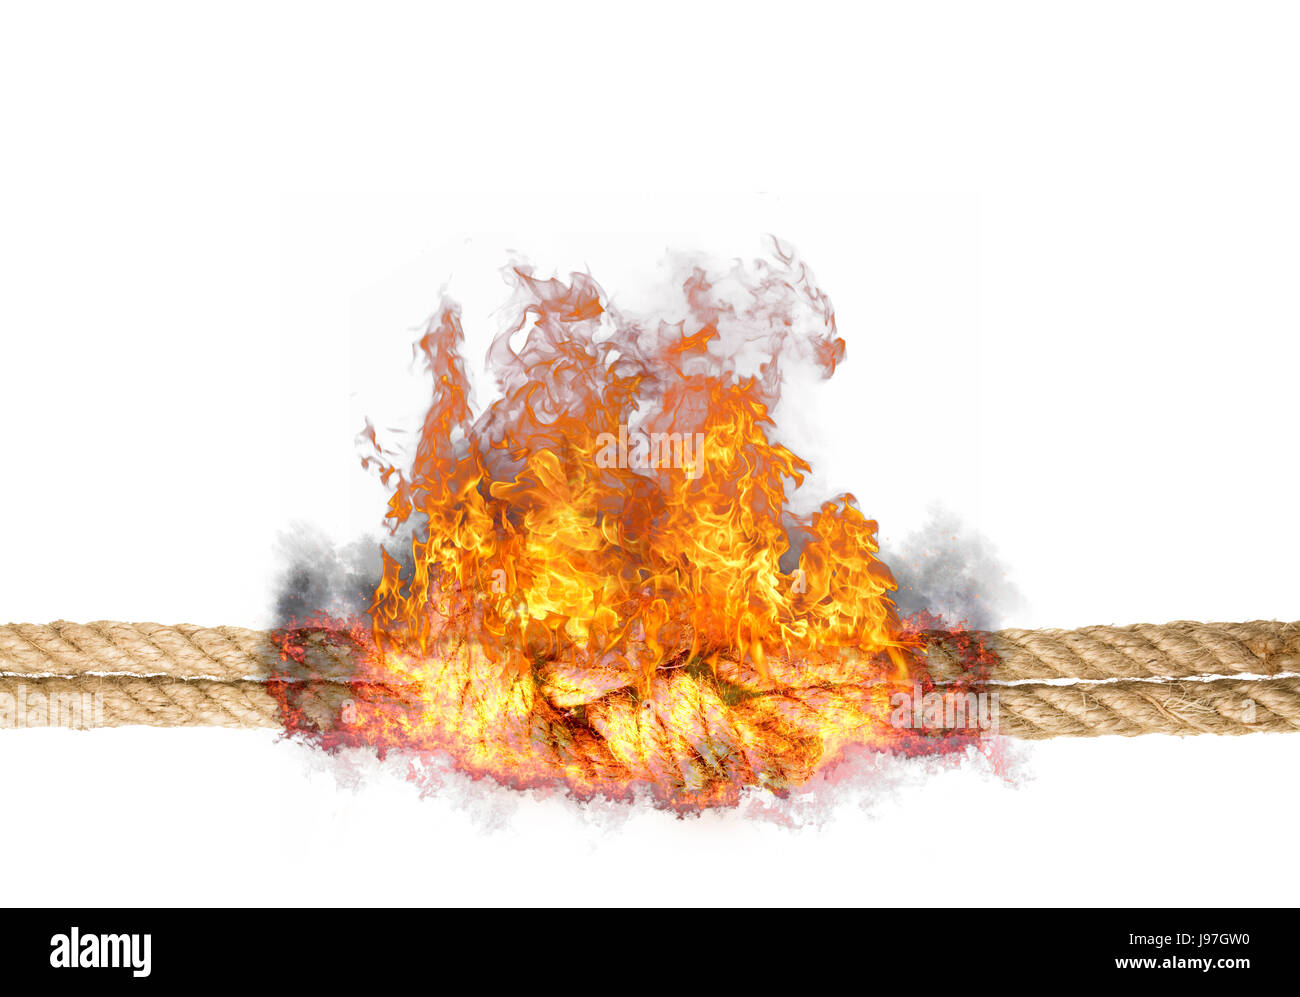 Starkes Seil mit einem Knoten geplatzt in Flammen, isoliert gegen den weißen farbigen Hintergrund Stockfoto